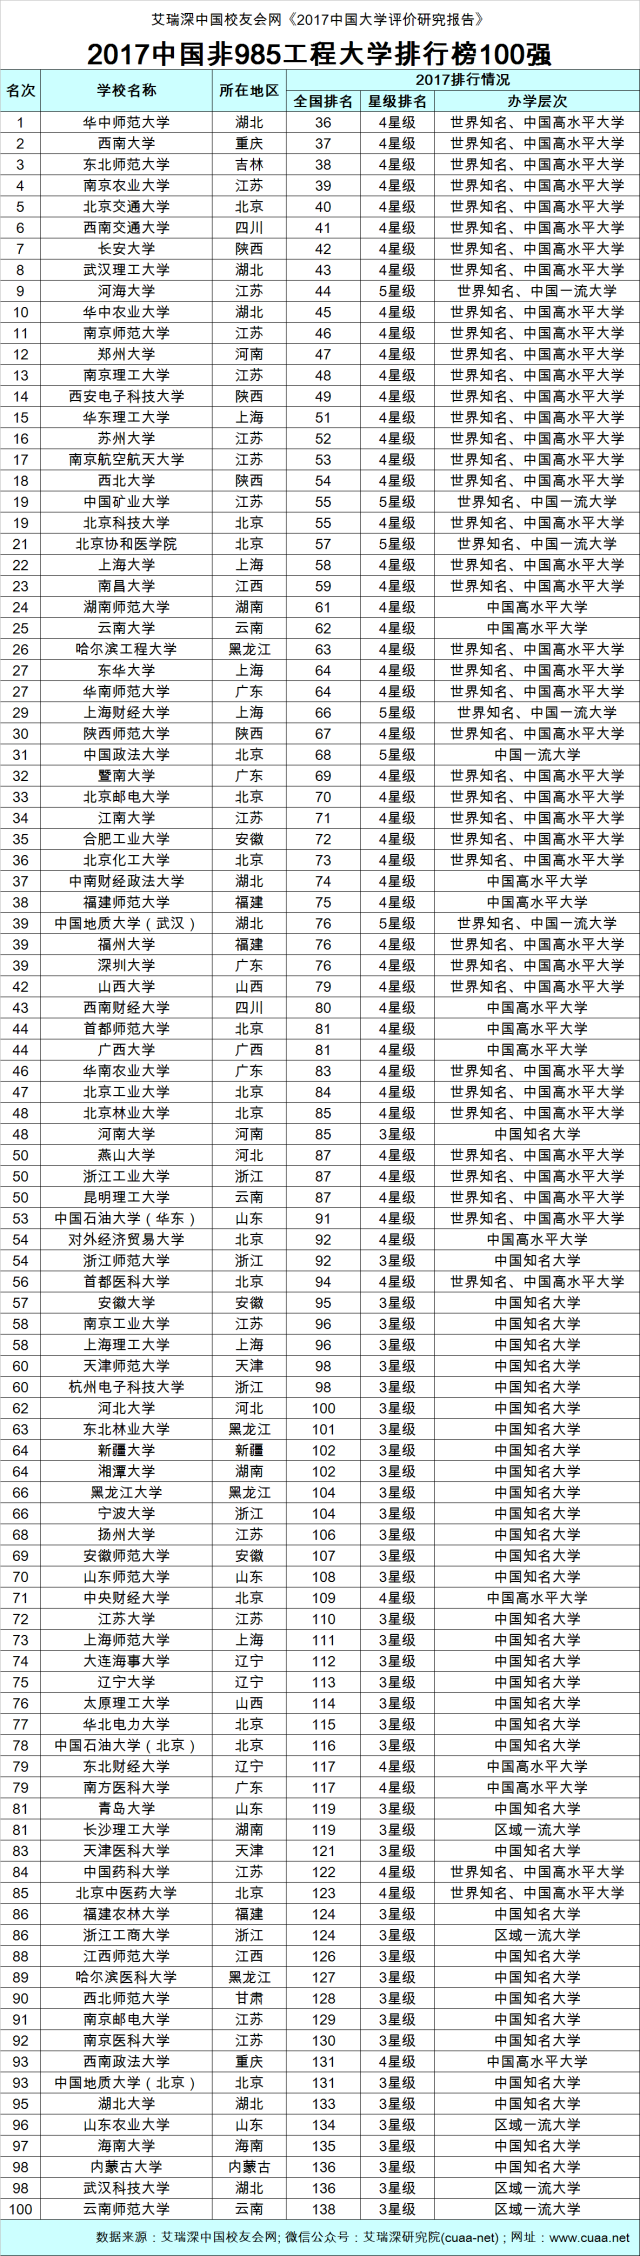 福建师范大学,深圳大学和山西大学雄居2017中国非211工程大学排行榜前